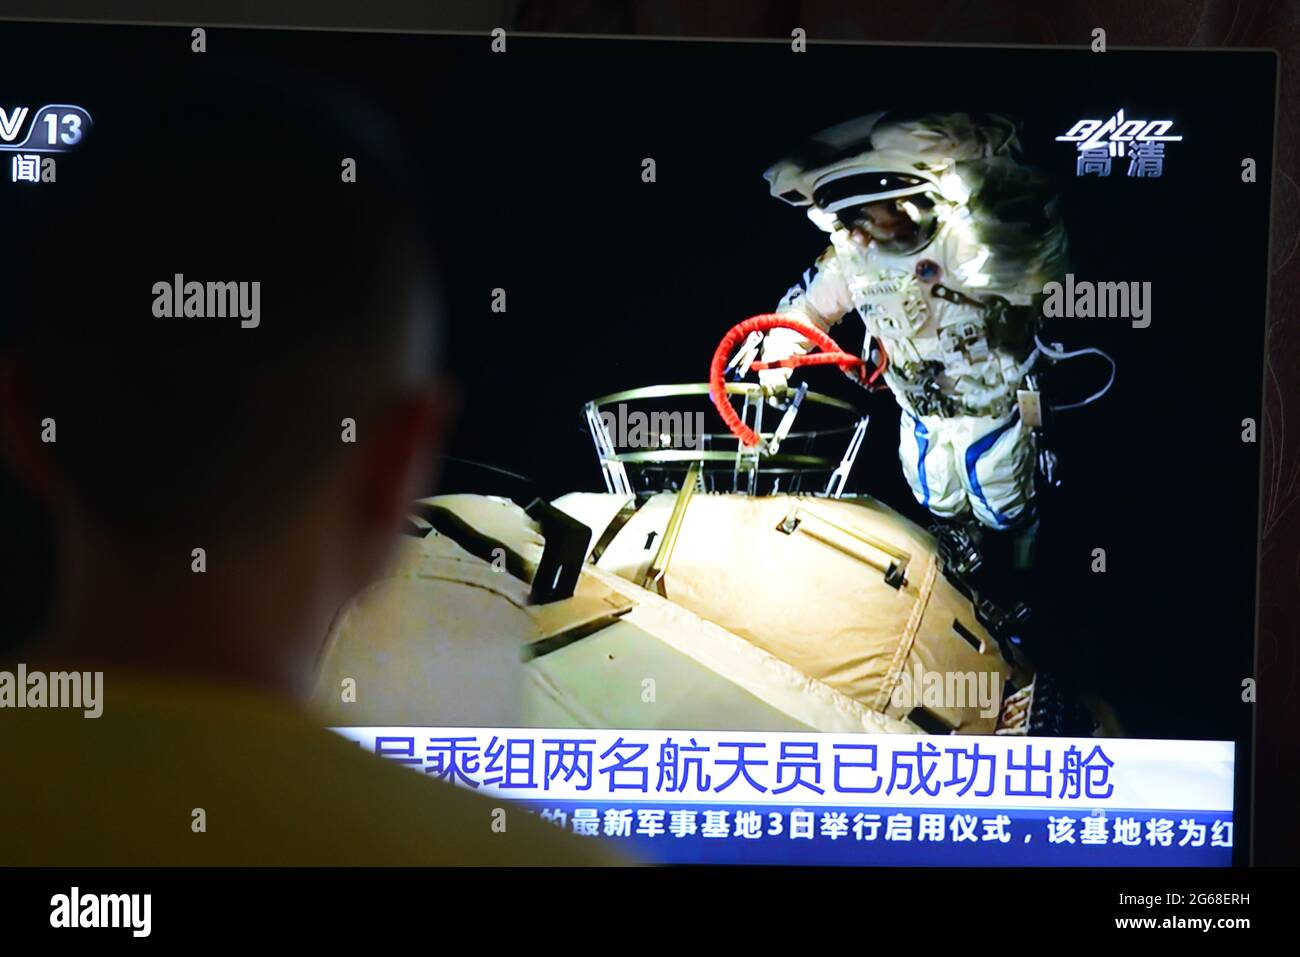 Das Publikum schaut sich die Live-TV-Sendung vor dem Fernseher an, Über die beiden Astronauten der chinesischen Raumsonde Shenzhou 12, die Weltraumoperationen außerhalb des Kernmoduls der chinesischen Raumstation durchgeführt haben.zwei chinesische Astronauten flogen am Sonntagmorgen aus dem Kernmodul der chinesischen permanenten Raumstation, um die erste extravakuläre Aktivität des Landes durchzuführen, die gemeinhin als Spacewalk bekannt ist, In 13 Jahren. BIS 11:02 Uhr morgens schwebten Generalmajor Liu Bording und Oberst Tang Hongbo aus dem Modul namens Tianhe oder Harmony of Heavens heraus. Stockfoto